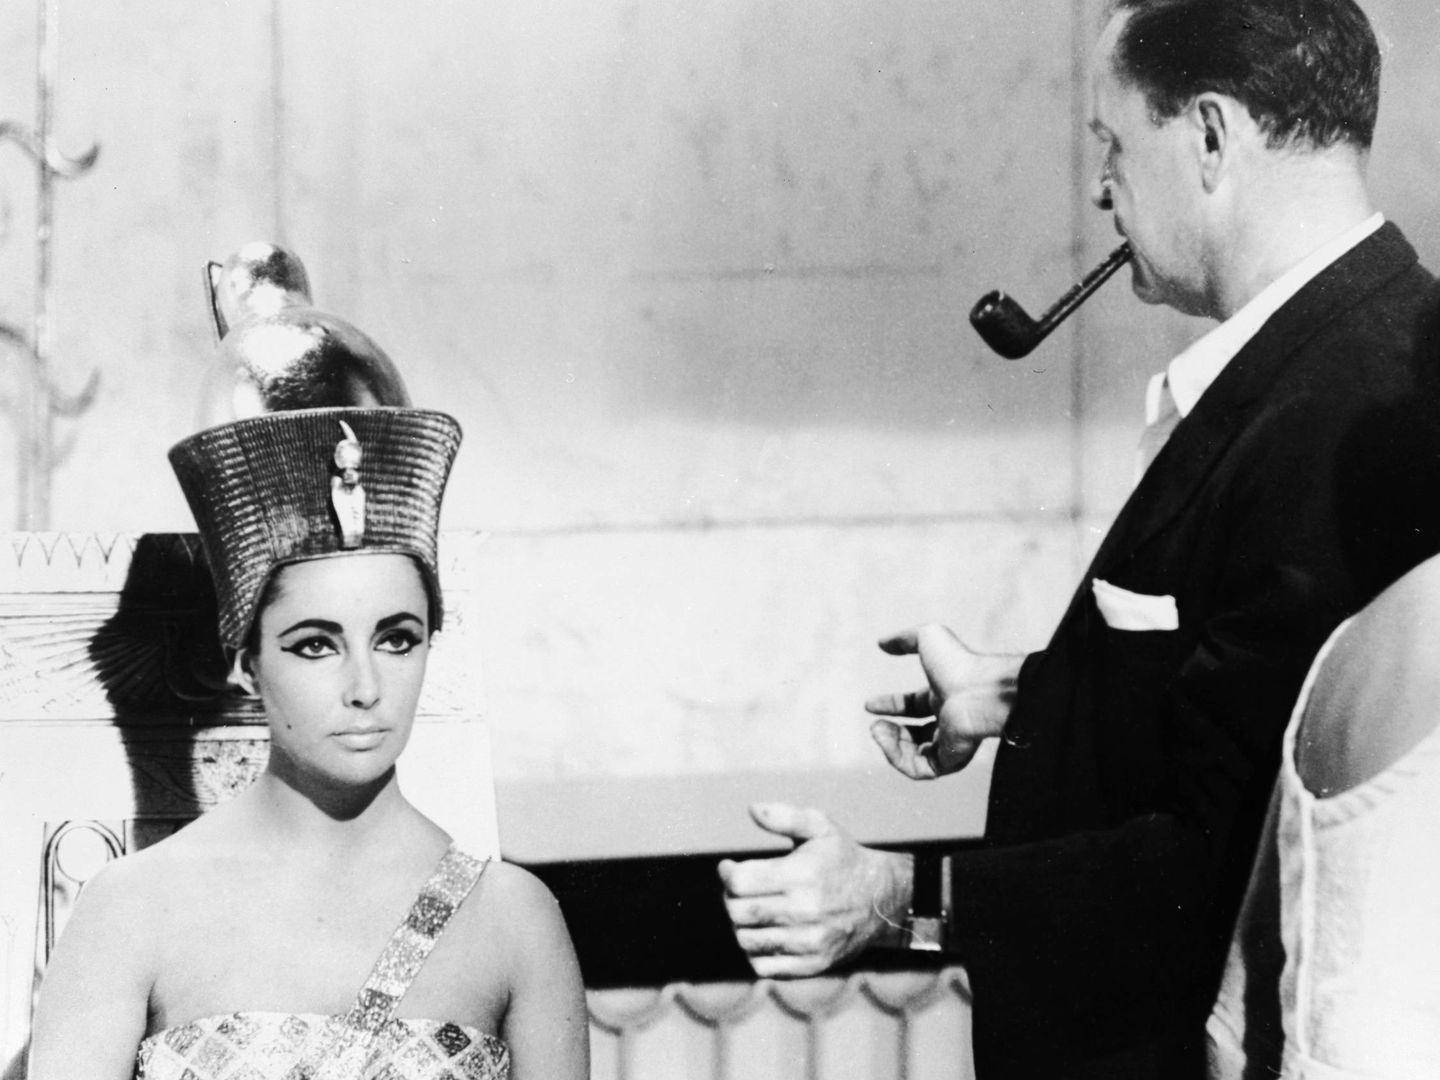 La actriz Elizabeth Taylor durante el rodaje de 'Cleopatra' en 1962 (Getty Images).